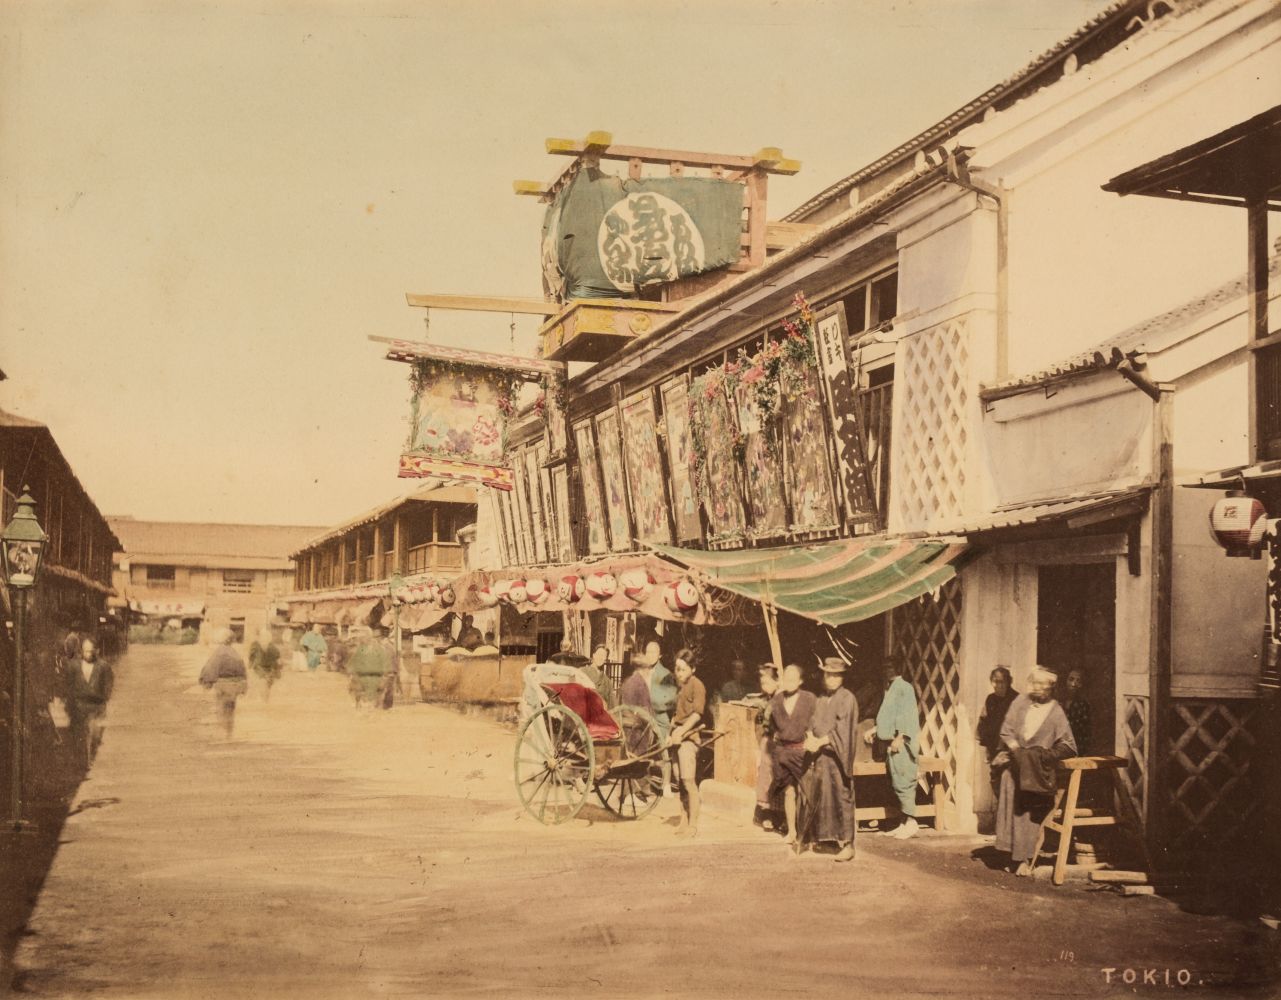 Japan. Tokyo street scene, by Raimund von Stillfried (1839-1911), Japan, c. 1870s